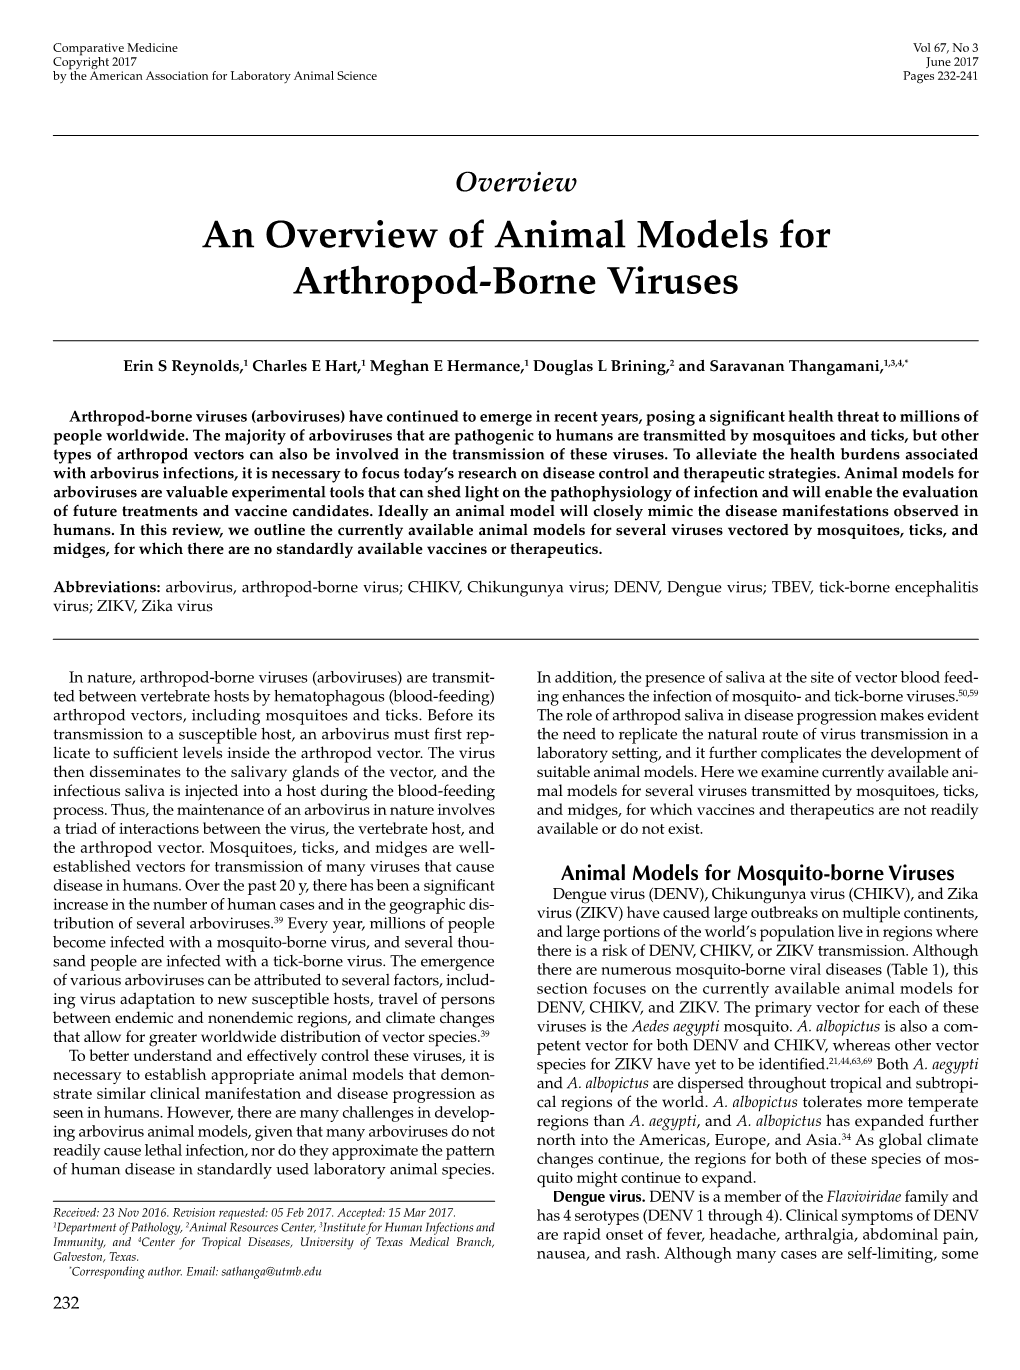 An Overview of Animal Models for Arthropod-Borne Viruses